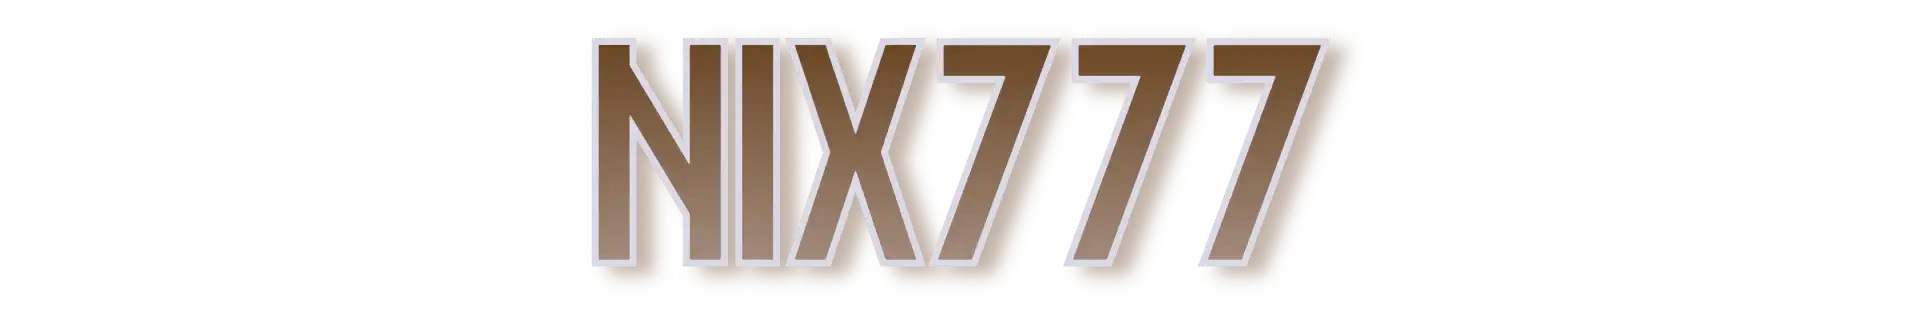 Nix777